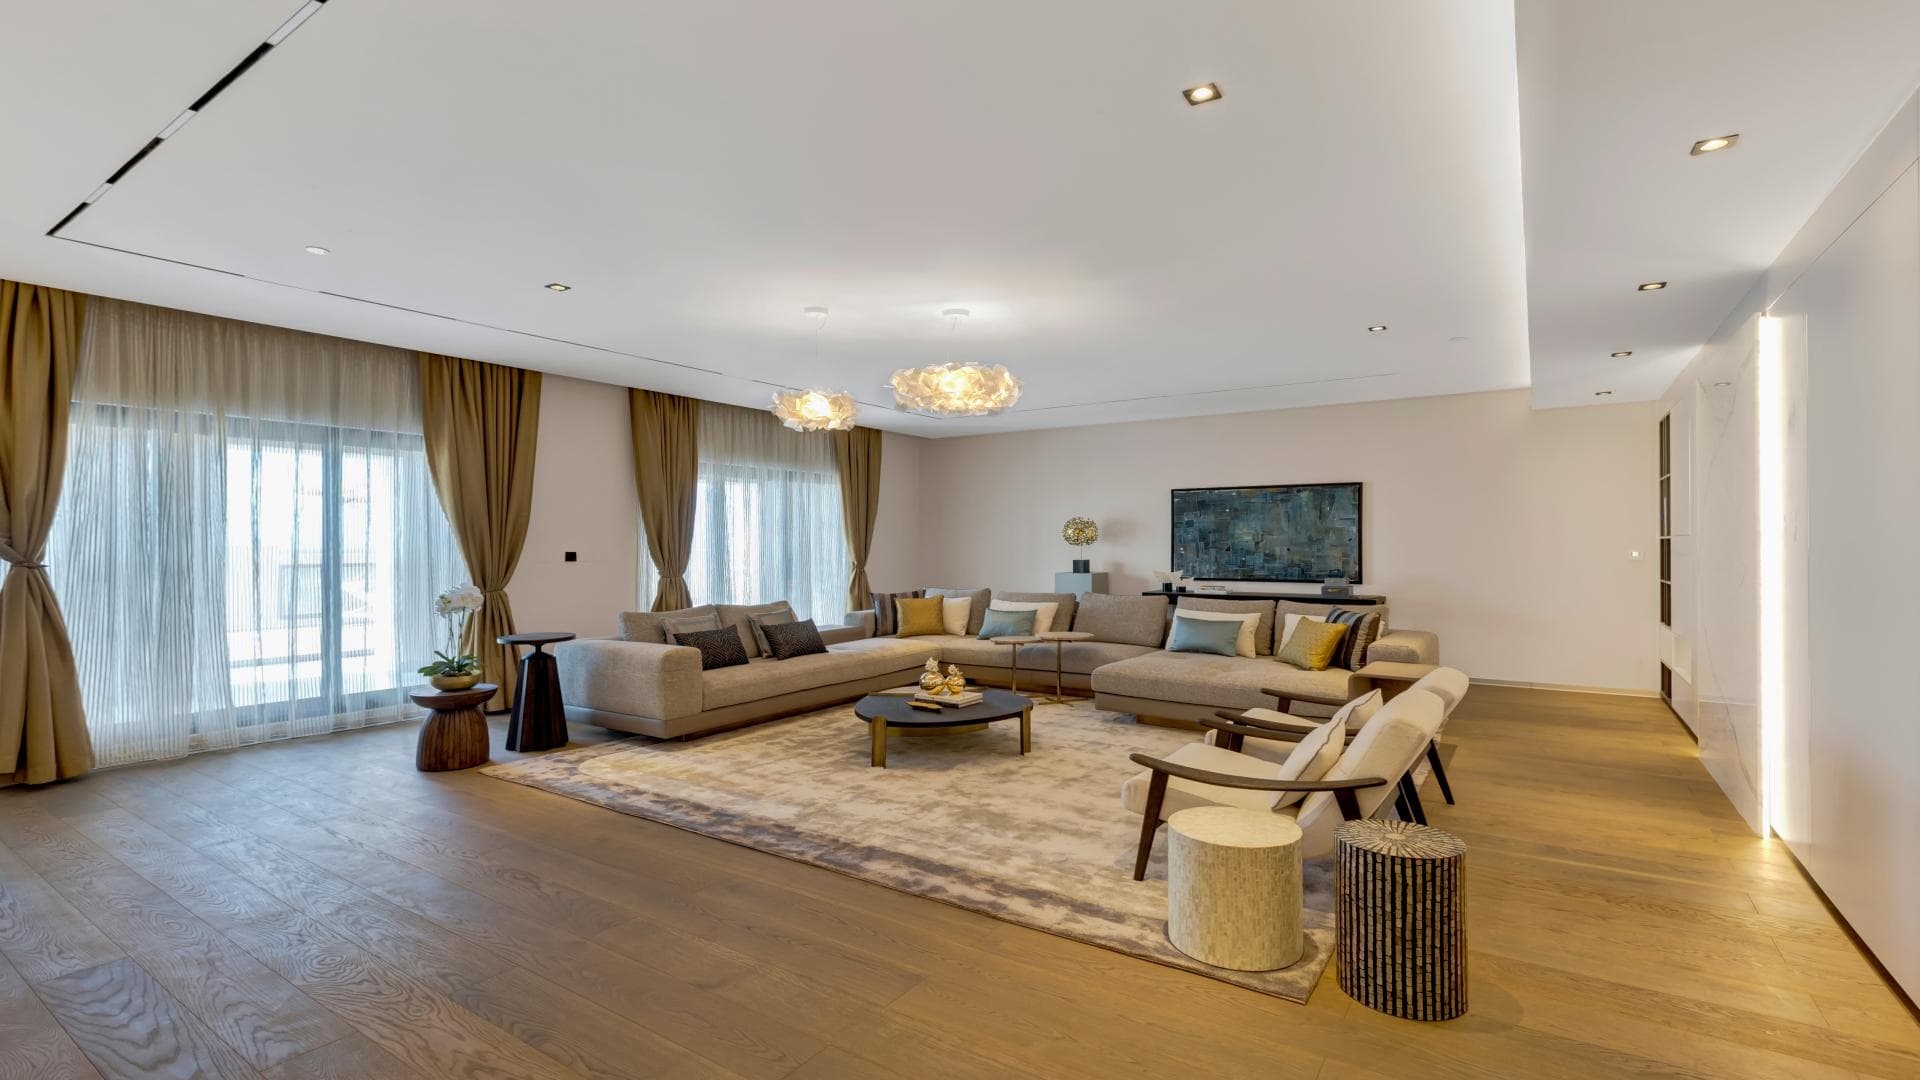 6 Bedroom Penthouse For Sale Kingdom Of Sheba Lp37220 2bf5af3244496400.jpg